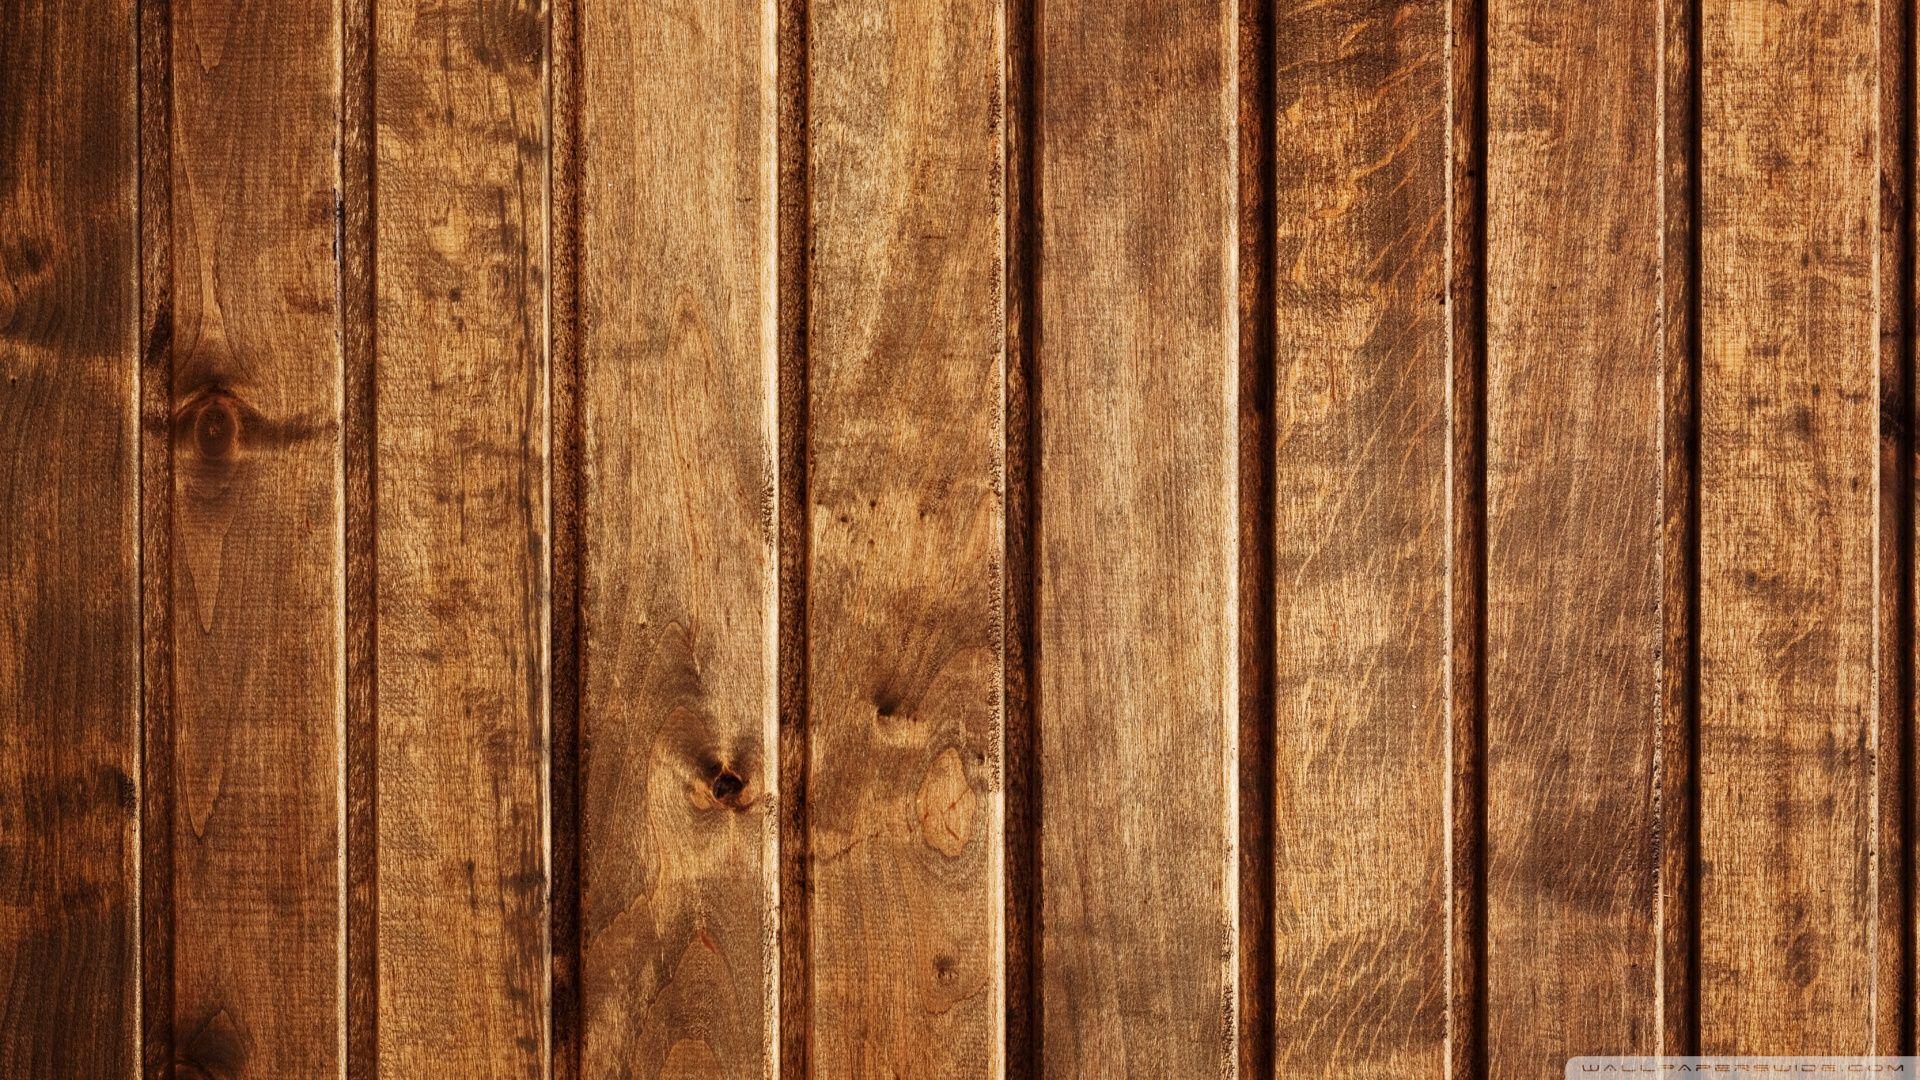 Wood Panels HD desktop wallpaper, Widescreen, High Definition